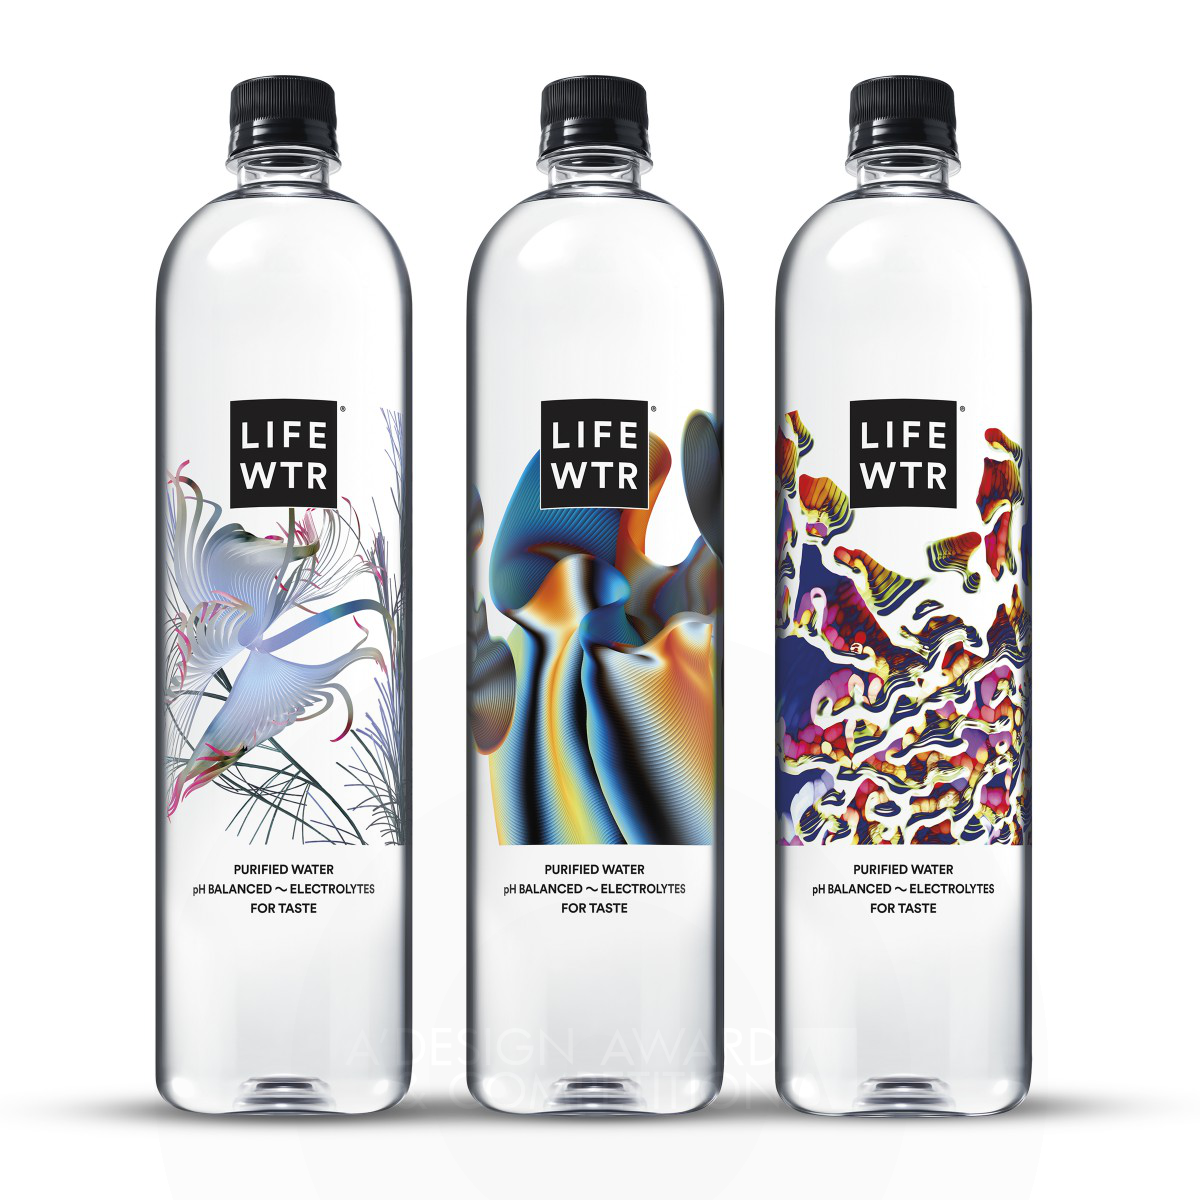 Lifewtr Series 7 Art Through Technology Packaging